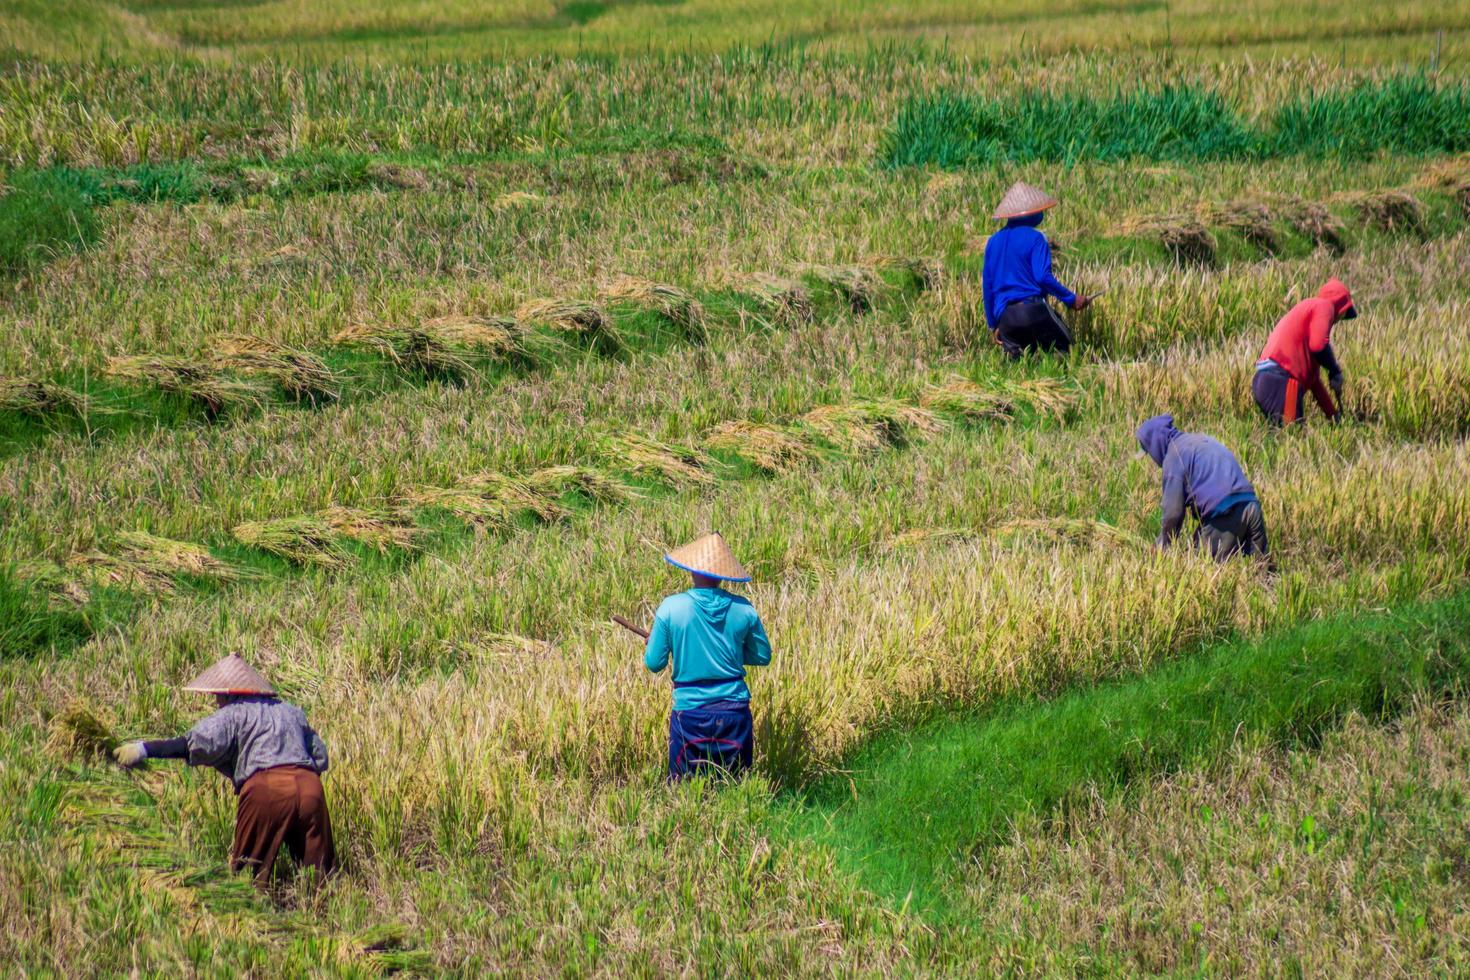 belle vue du matin en indonésie. vue panoramique sur les rizières avec des agriculteurs récoltant du riz photo